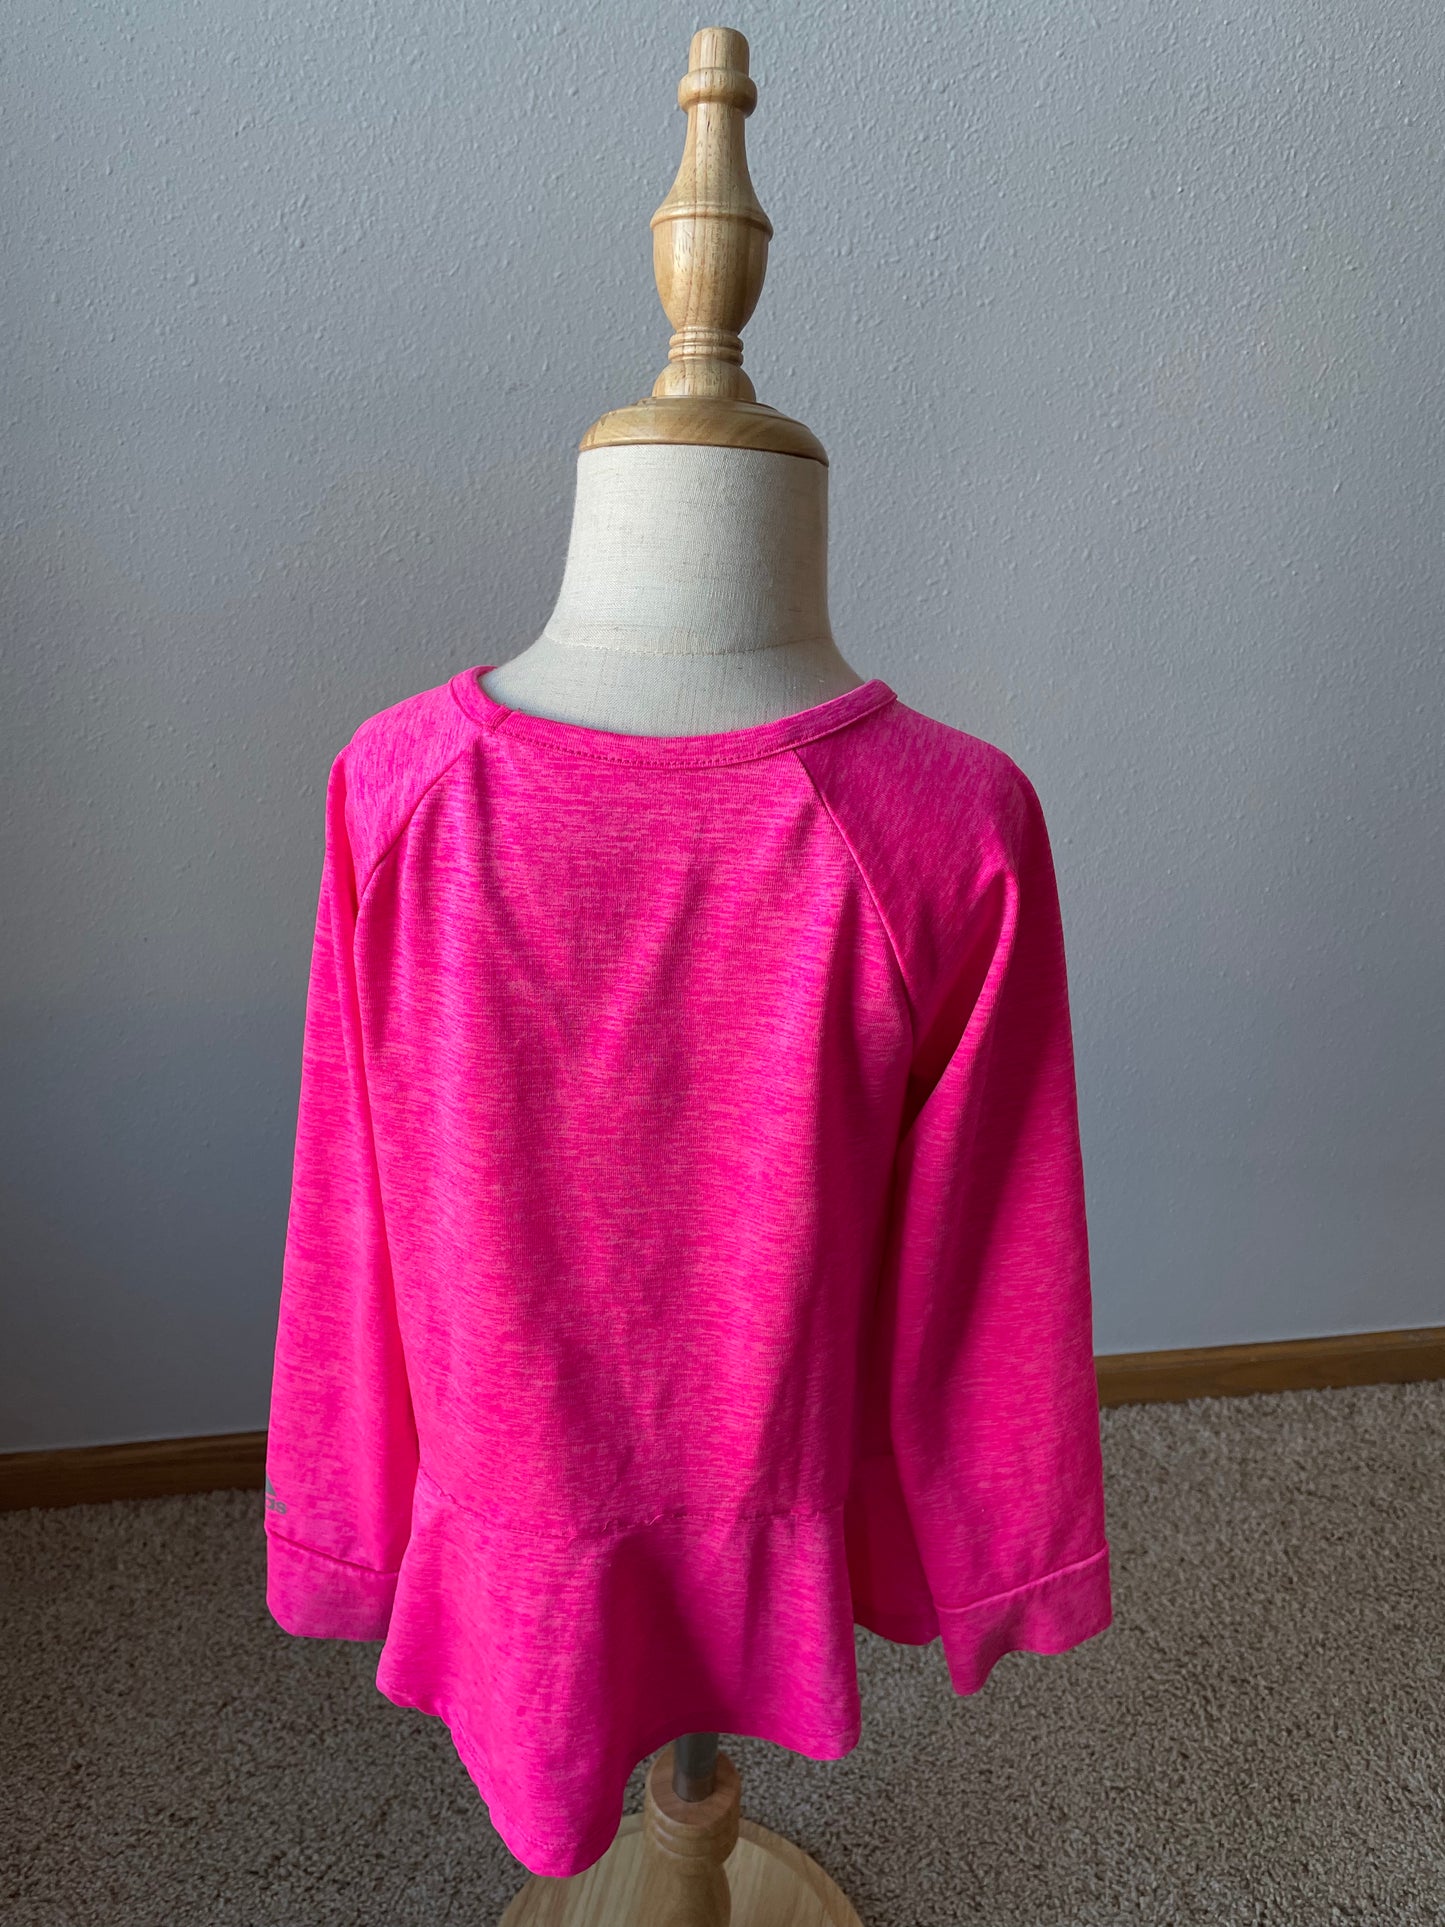 Adidas Pink Long Sleeved Shirt (5T)